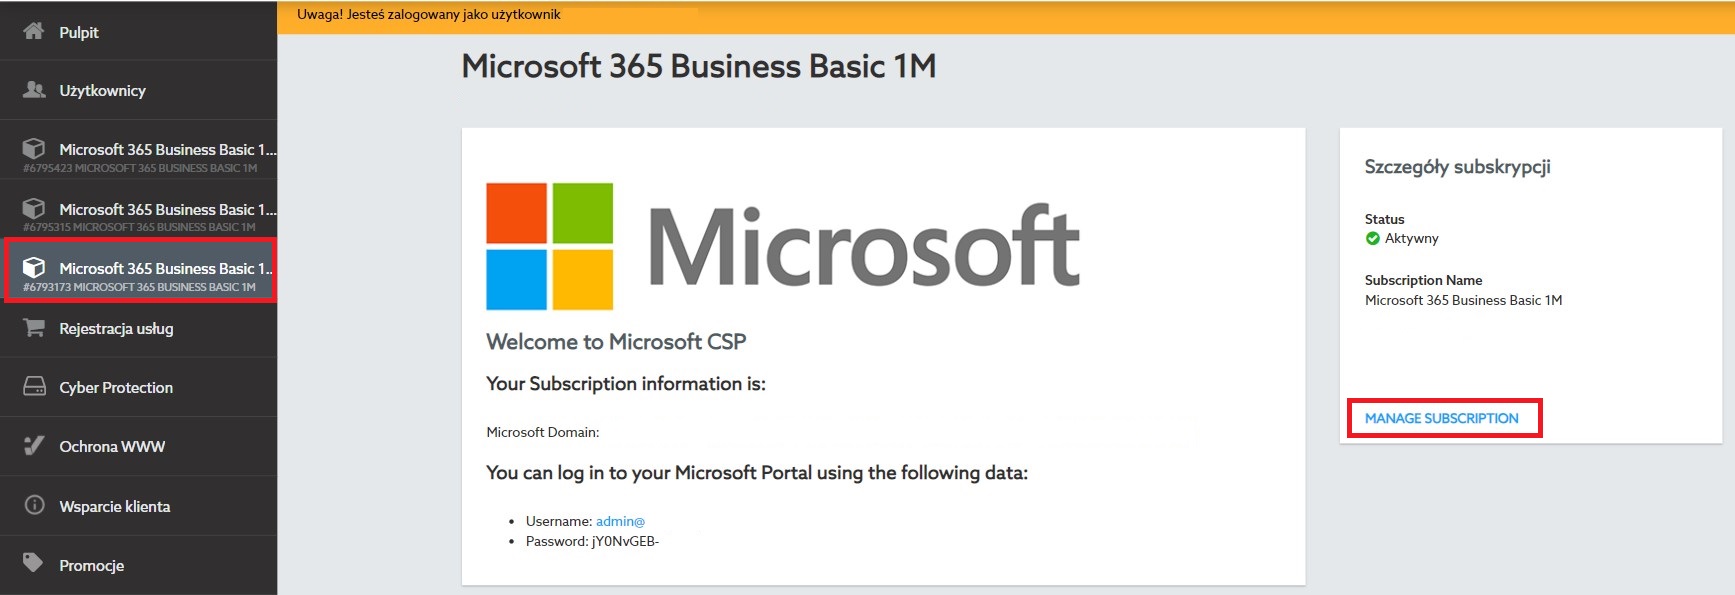 Zarządzanie subskrypcją Microsoft Office 365 w panelu home.pl.